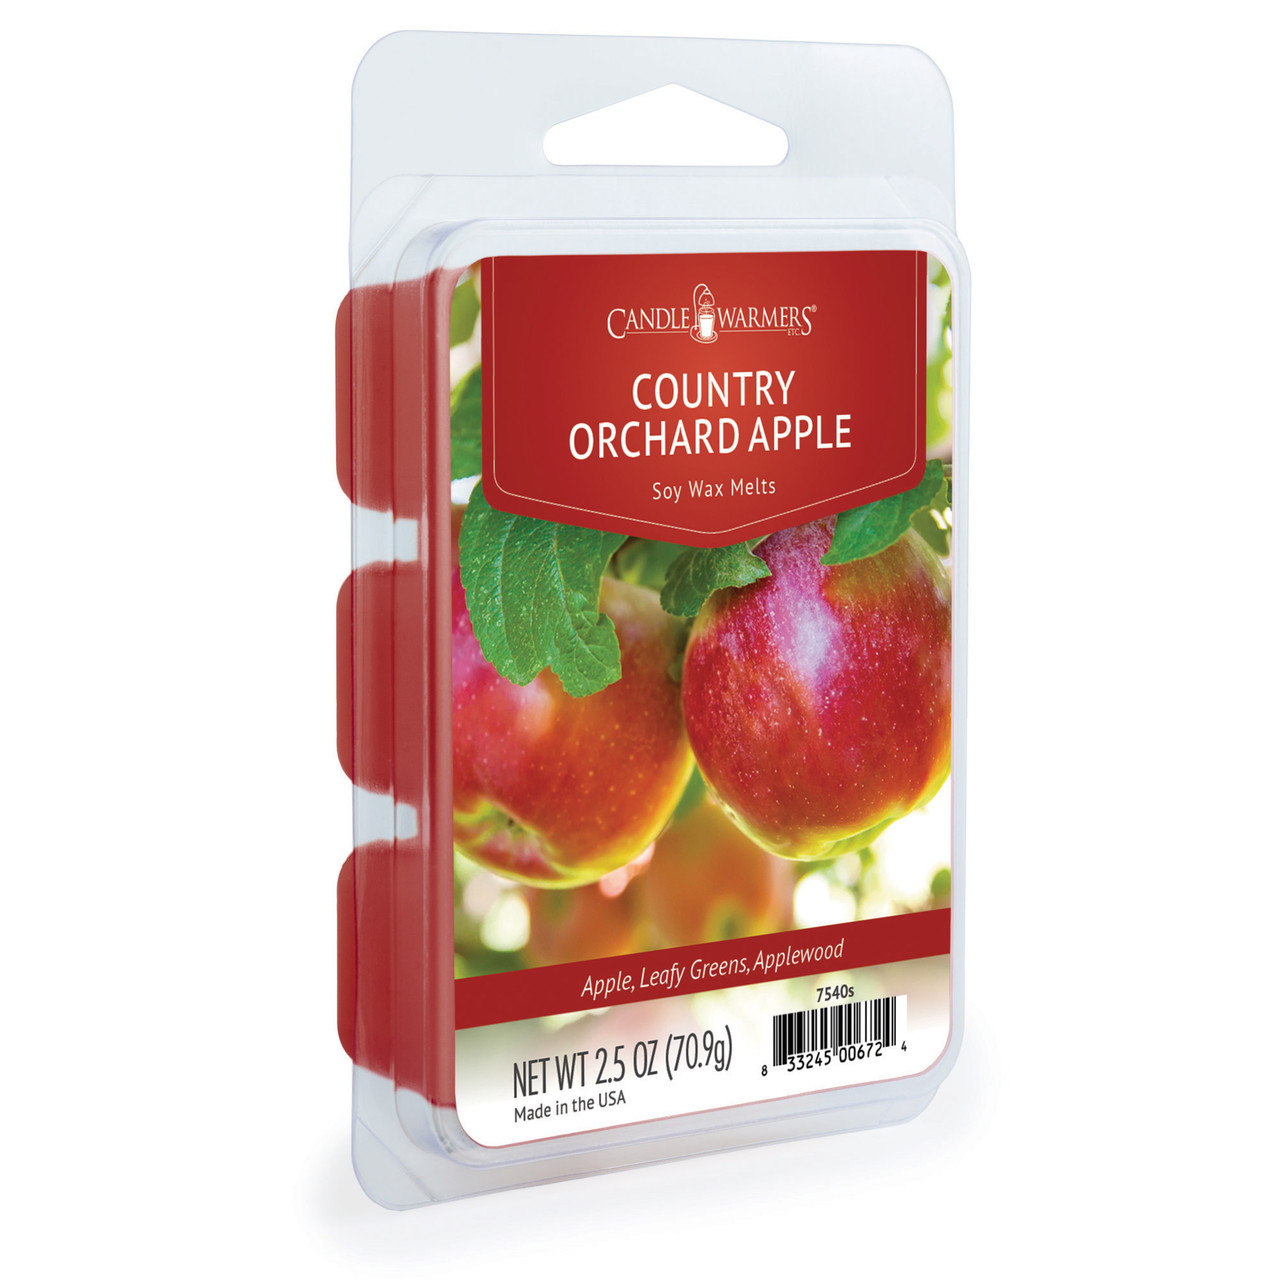 Apple Crisp Soy Wax Melts Wax Melts for Warmer, Scented Wax Melts